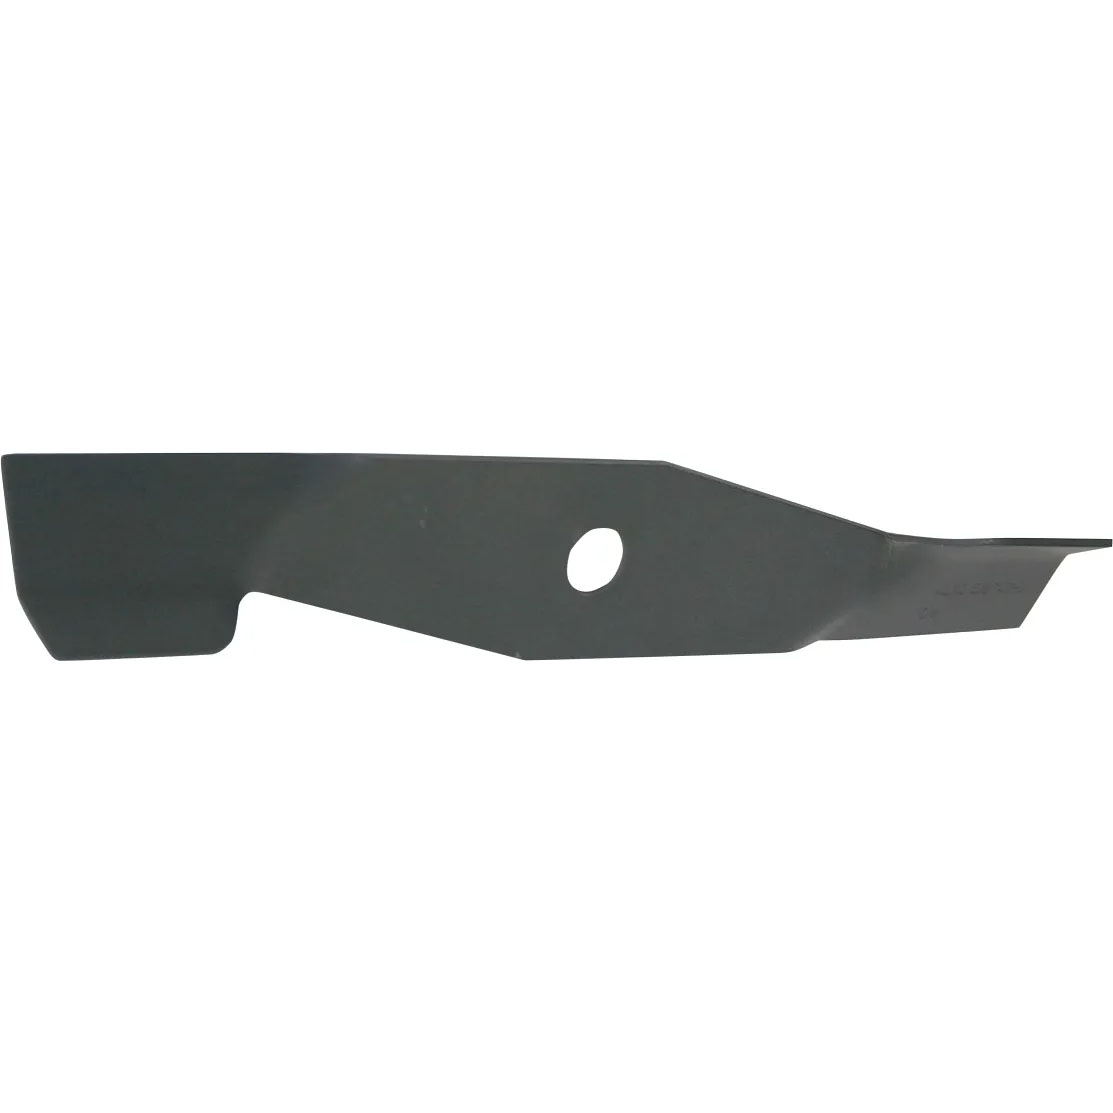 Нож для газонокосилок AL-KO 474544 38 см, цвет черный